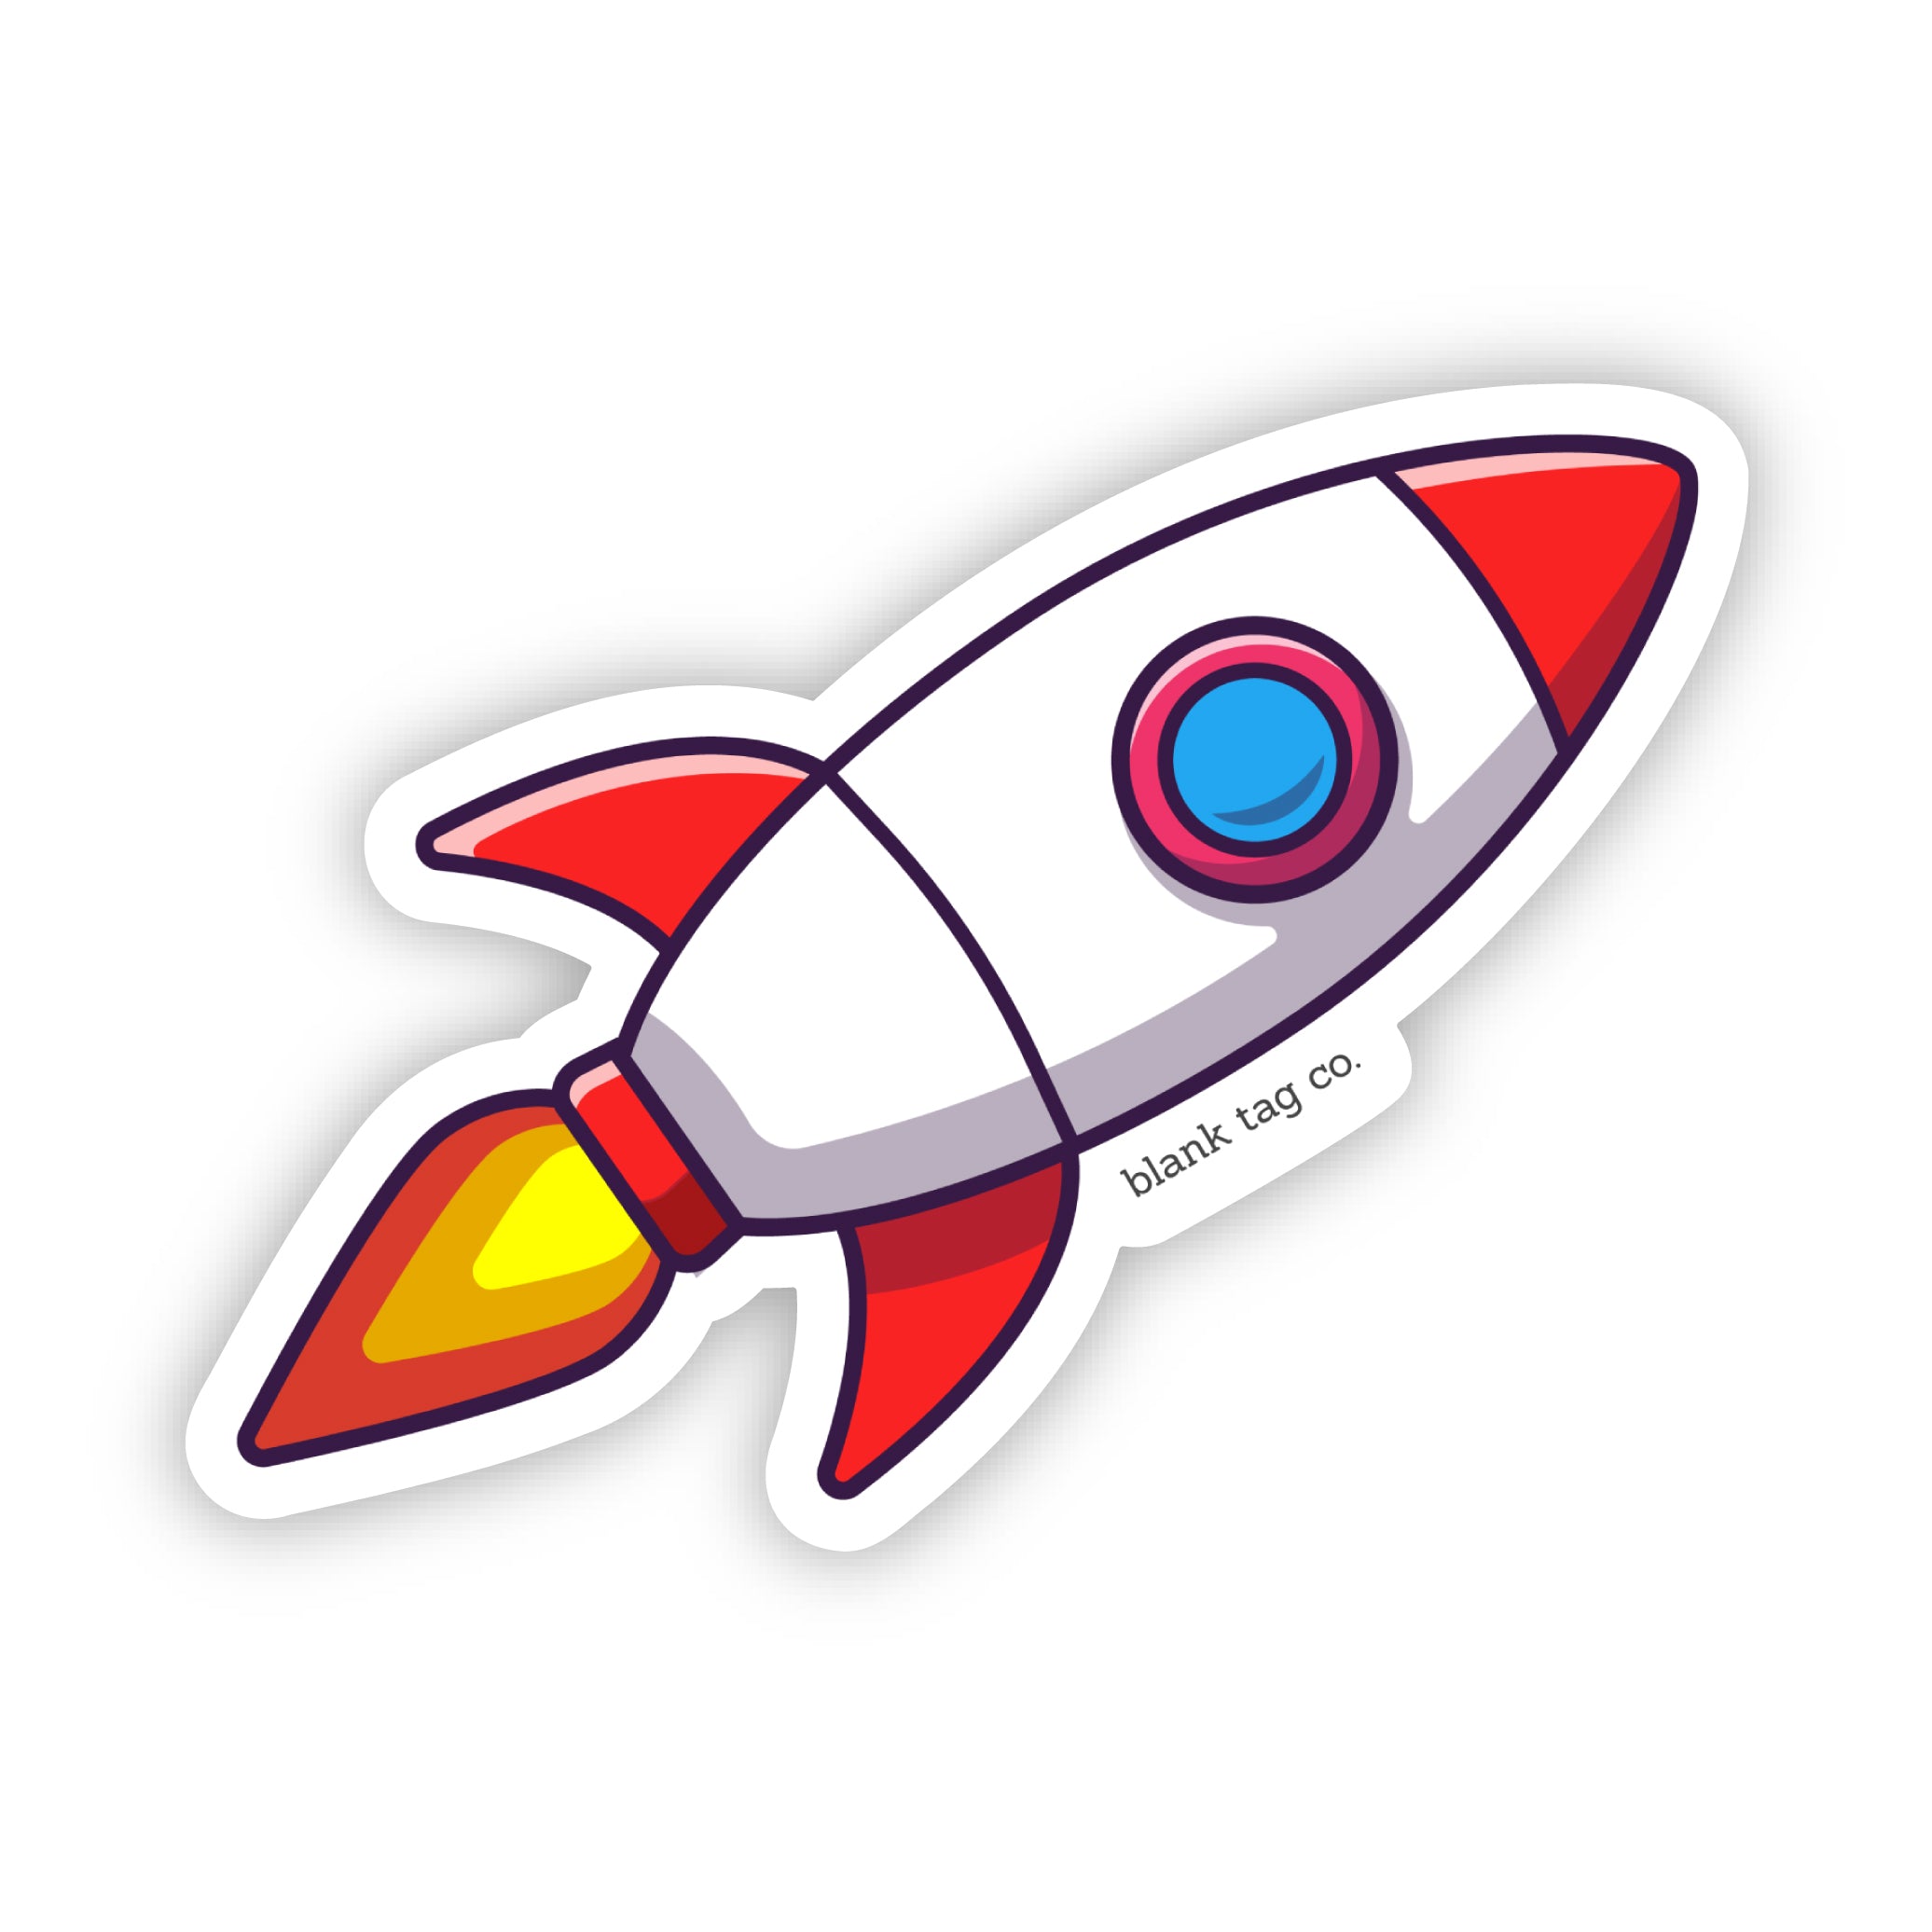 The Rocketship Sticker